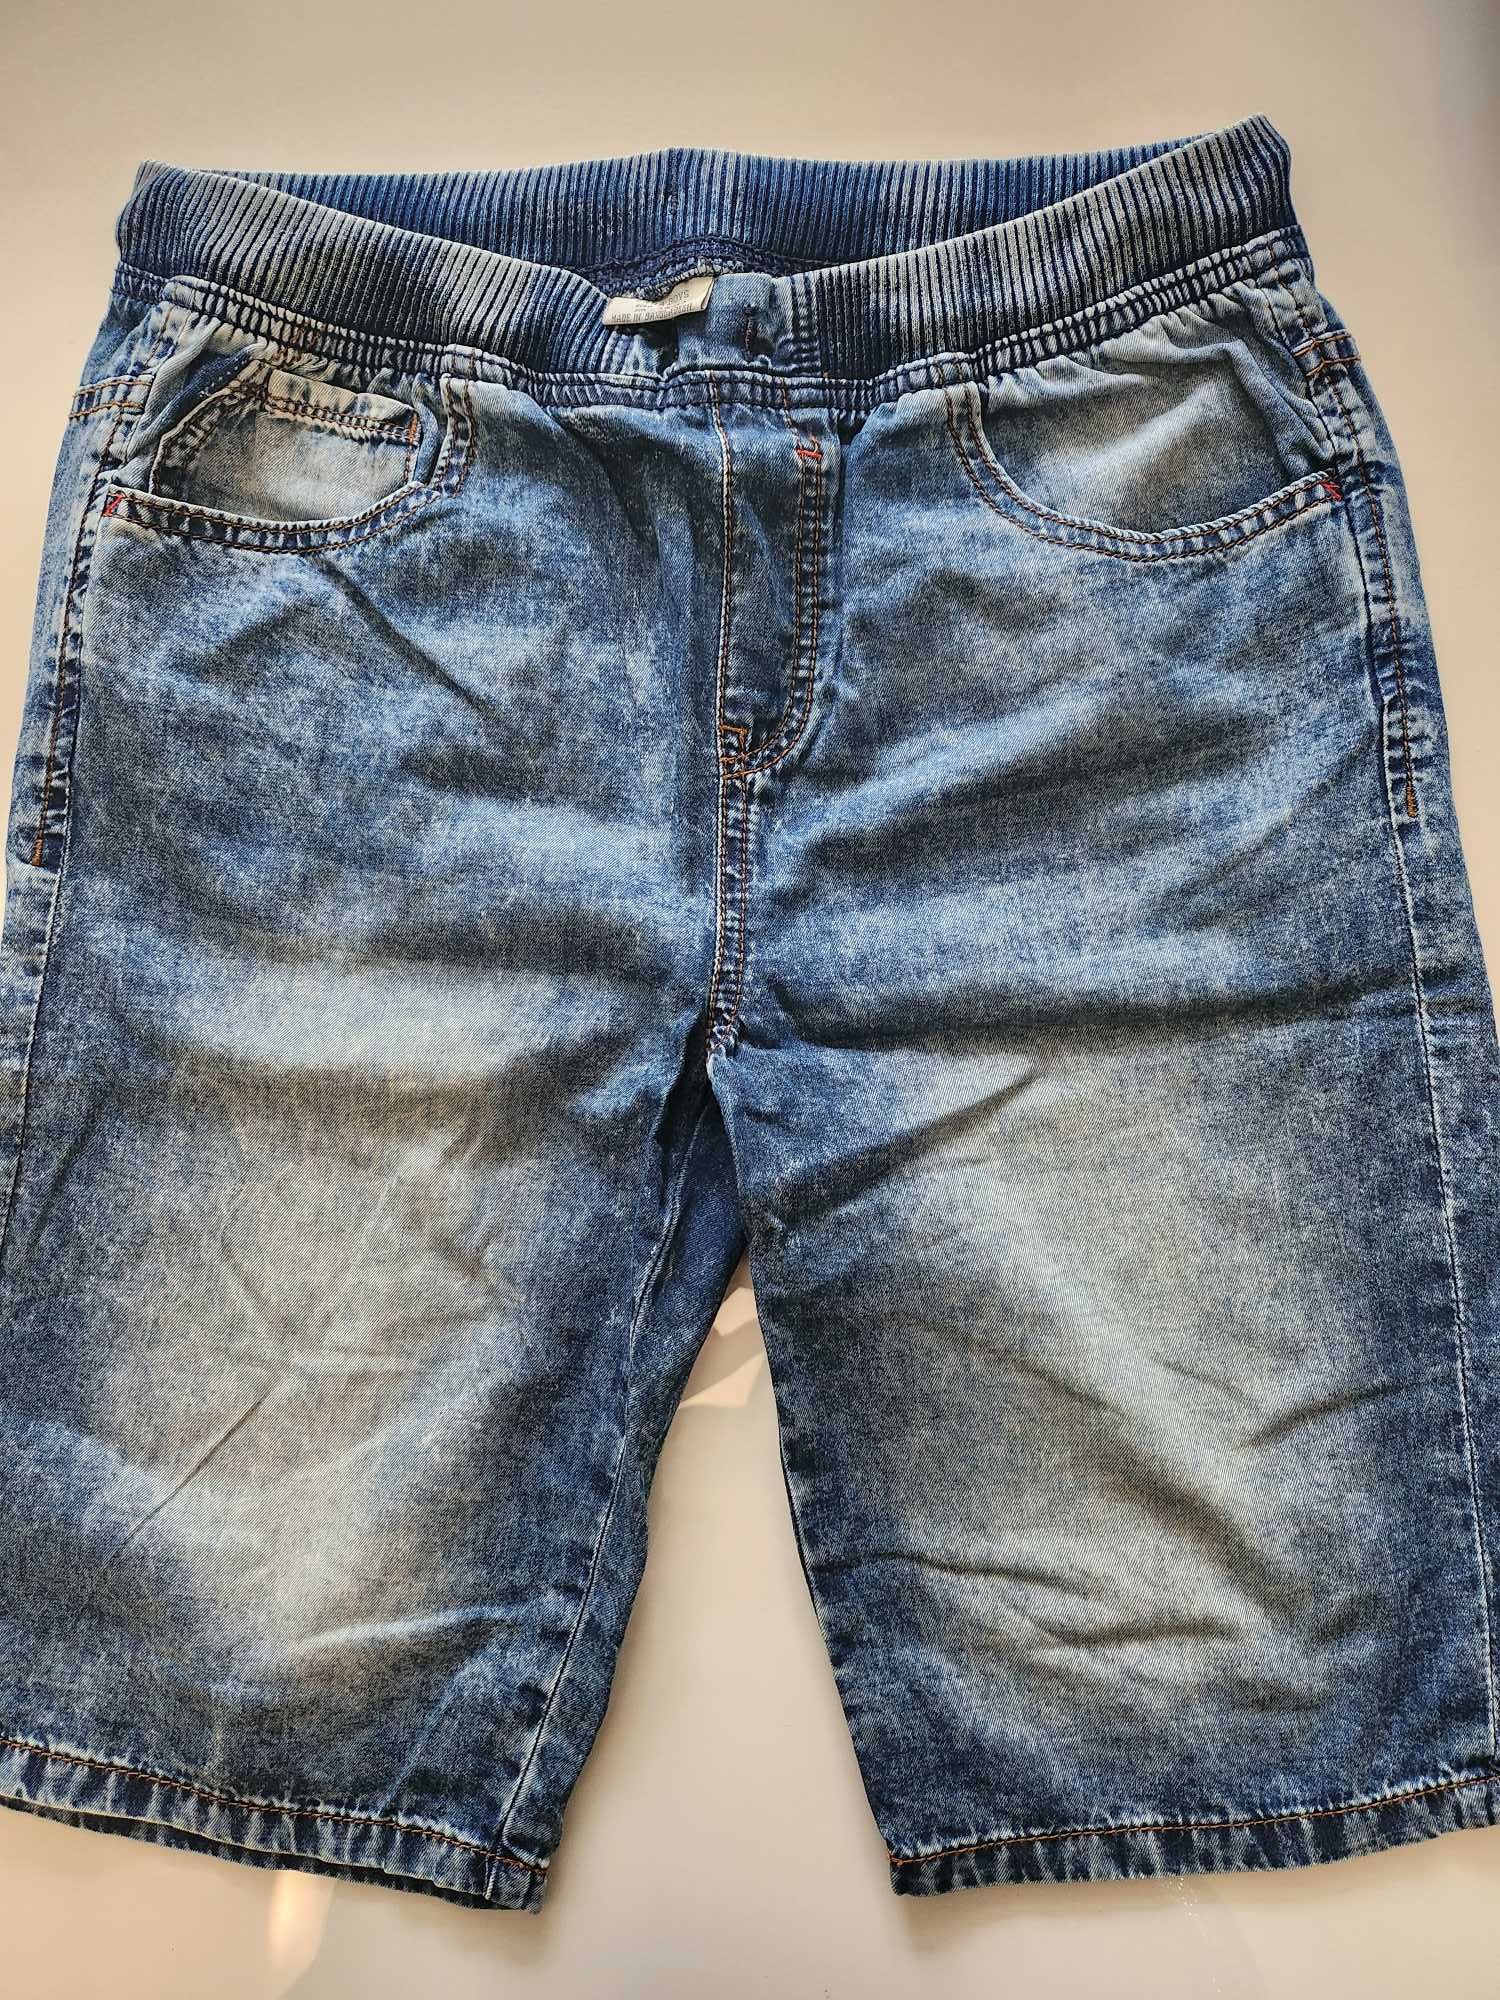 Spodenki jeans chłopiec Zara boys 164 cm 13 14 lat